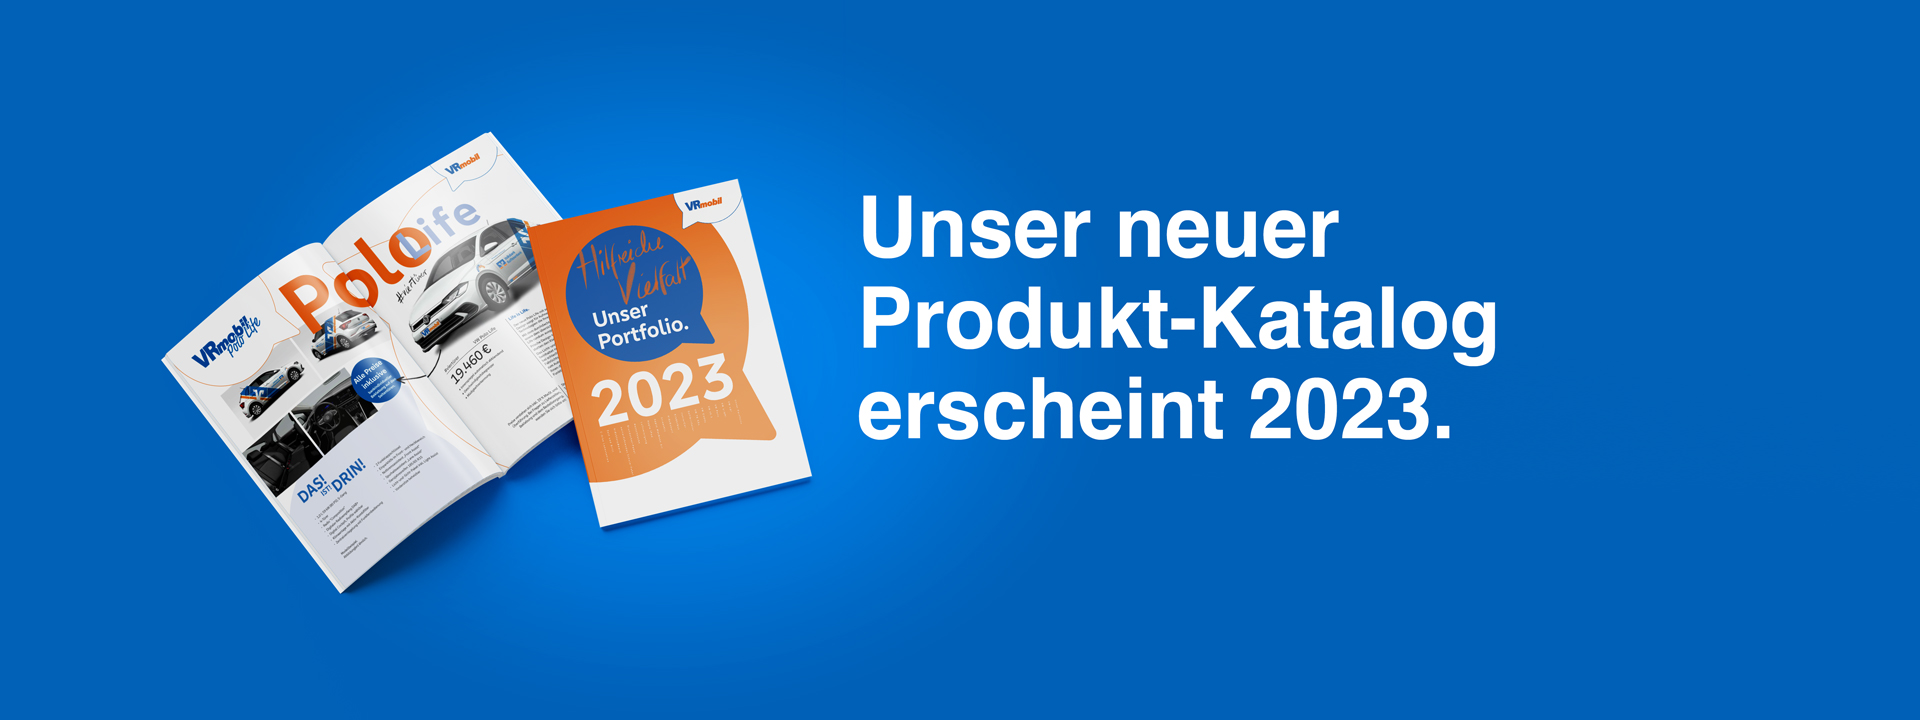 Broschüre - Unser neuer Produkt-Katalog erschein 2023.